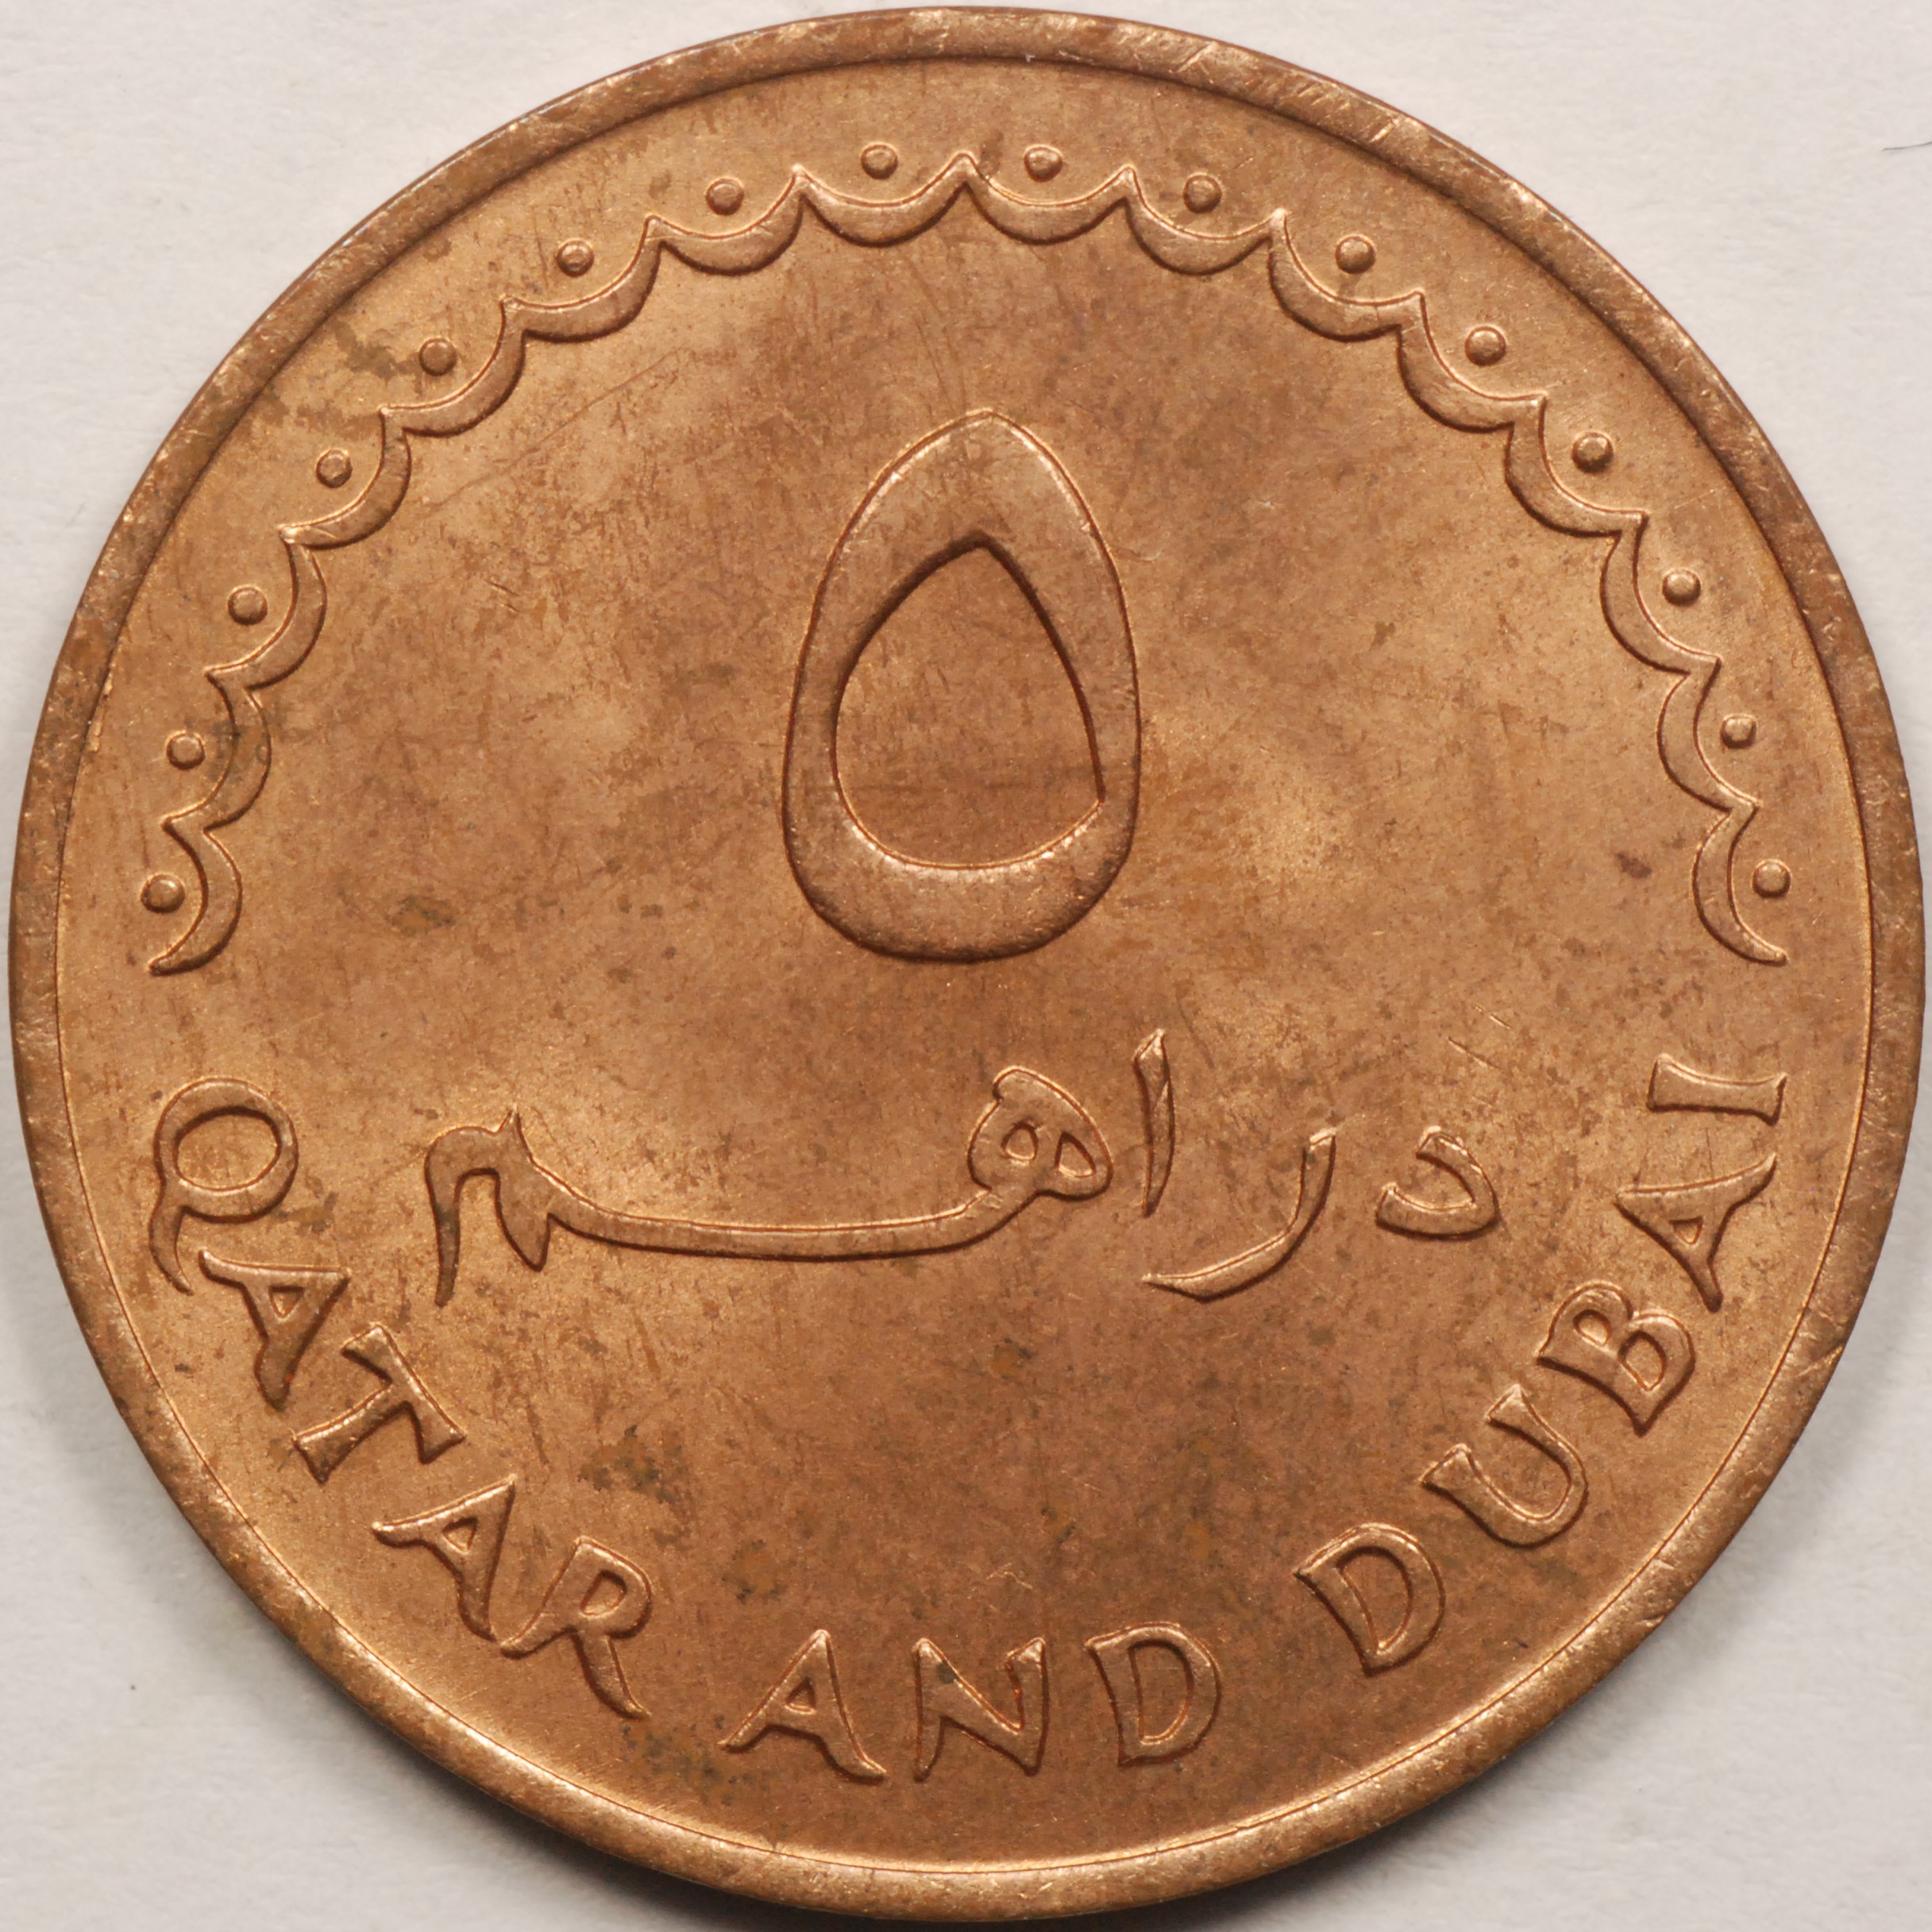 QATAR & DUBAI COINS